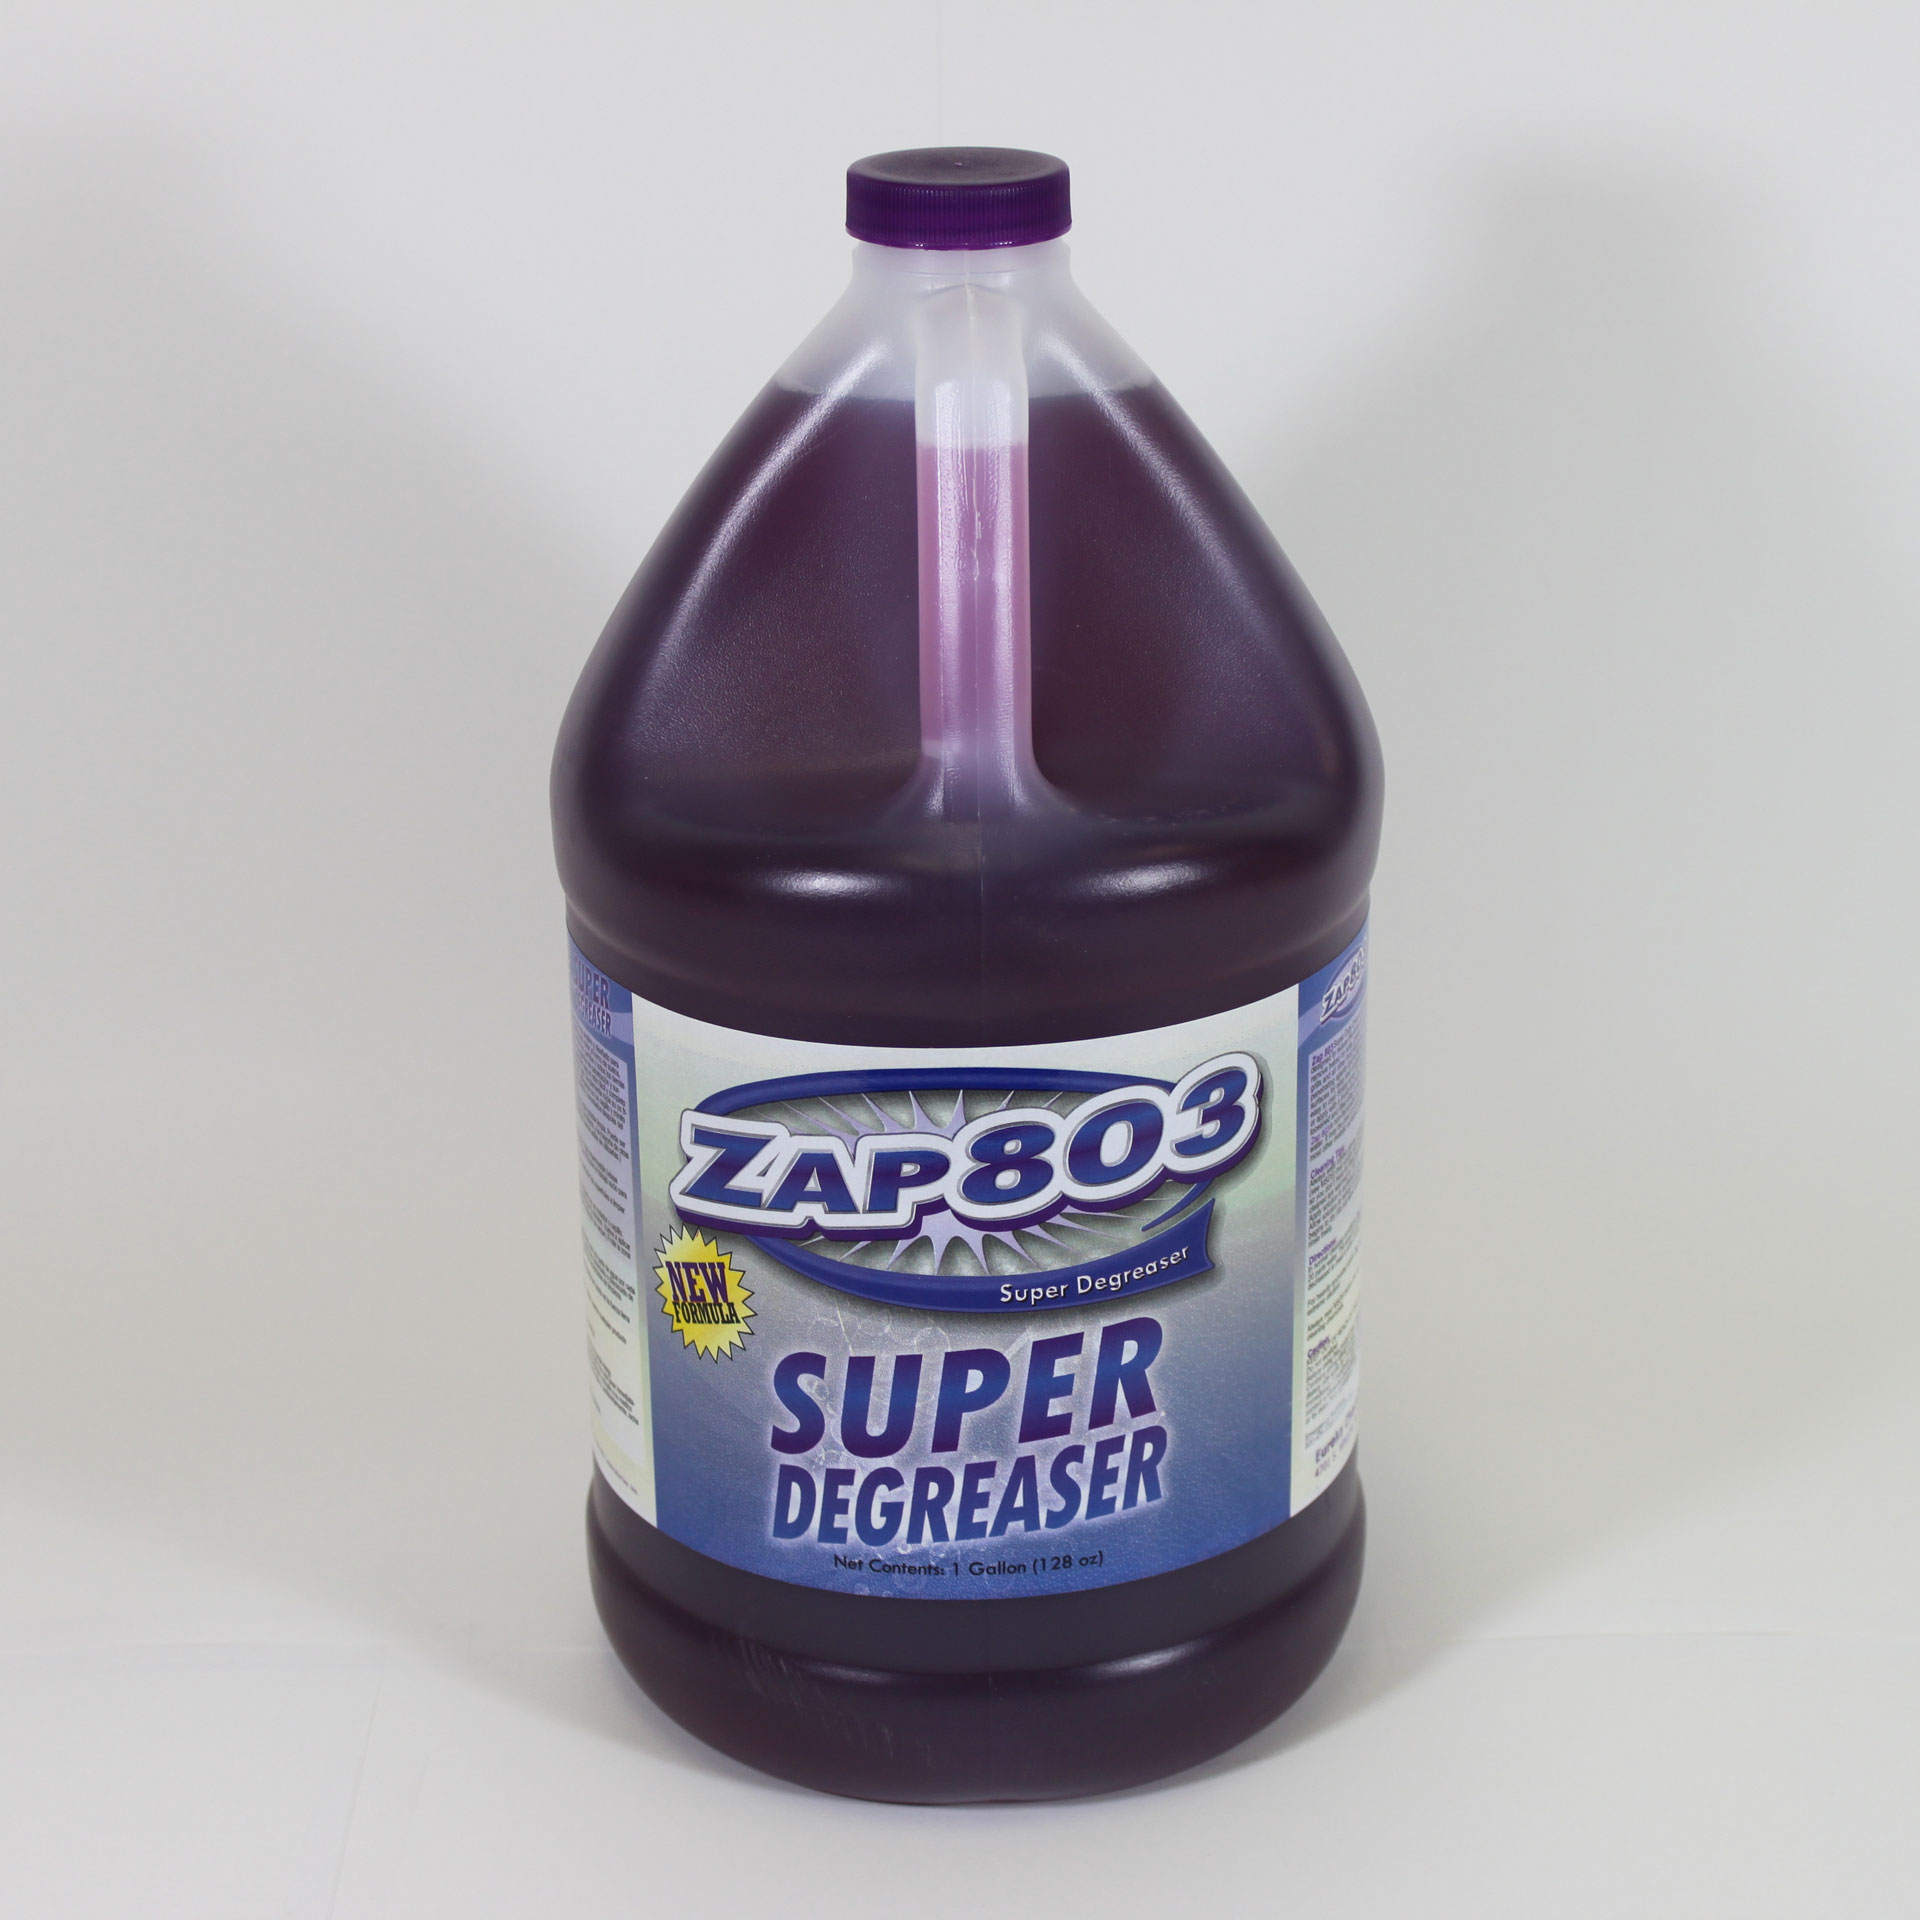 Bottle of Zap 803 super degreaser.